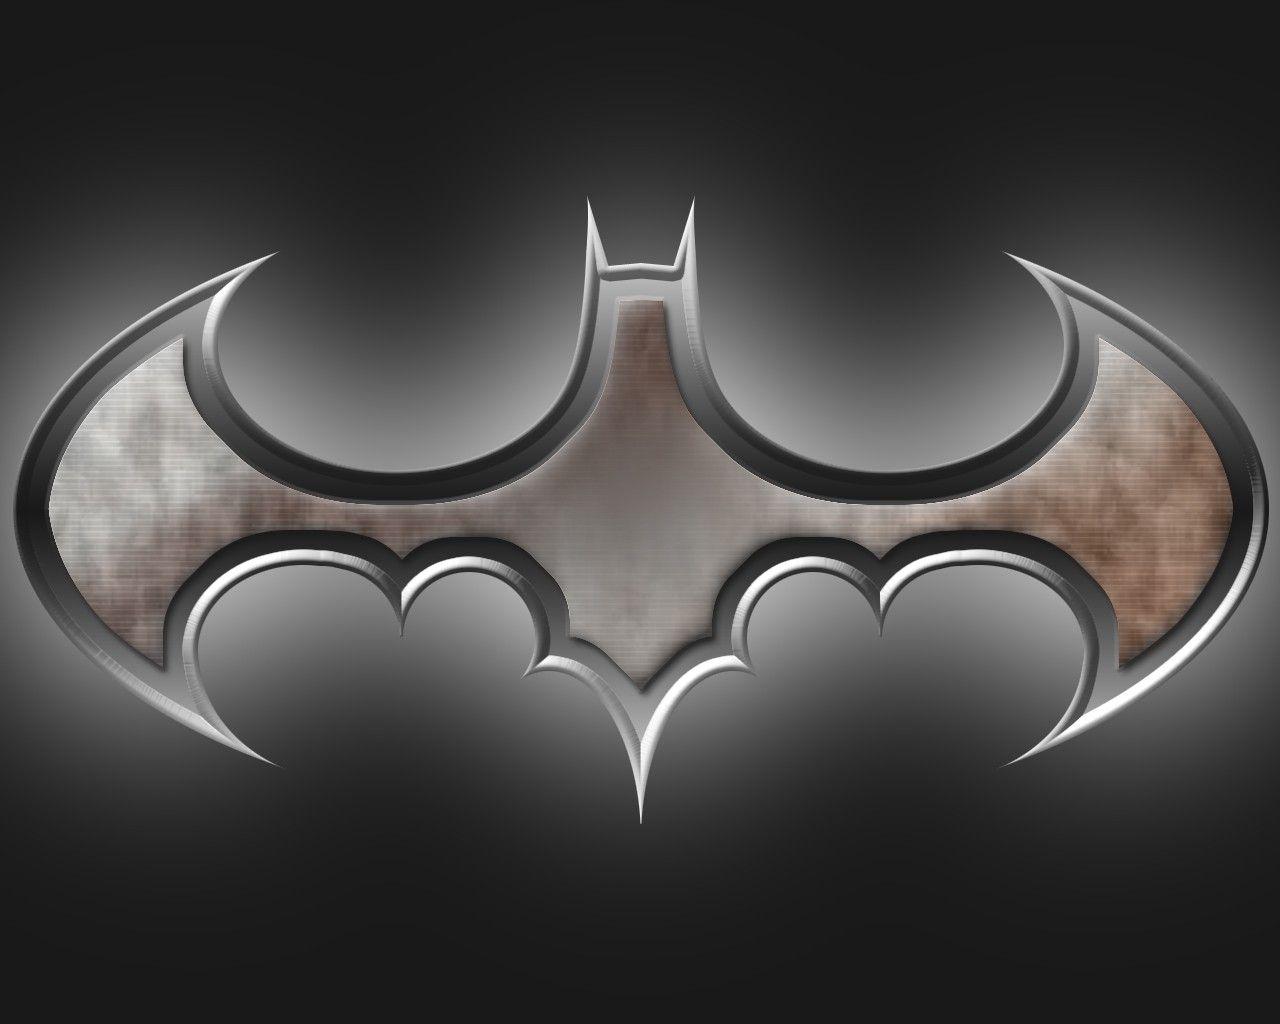 Silver Batman Logo - Image - Batman logo wallpaper 06.jpg | Idea Wiki | FANDOM powered by ...